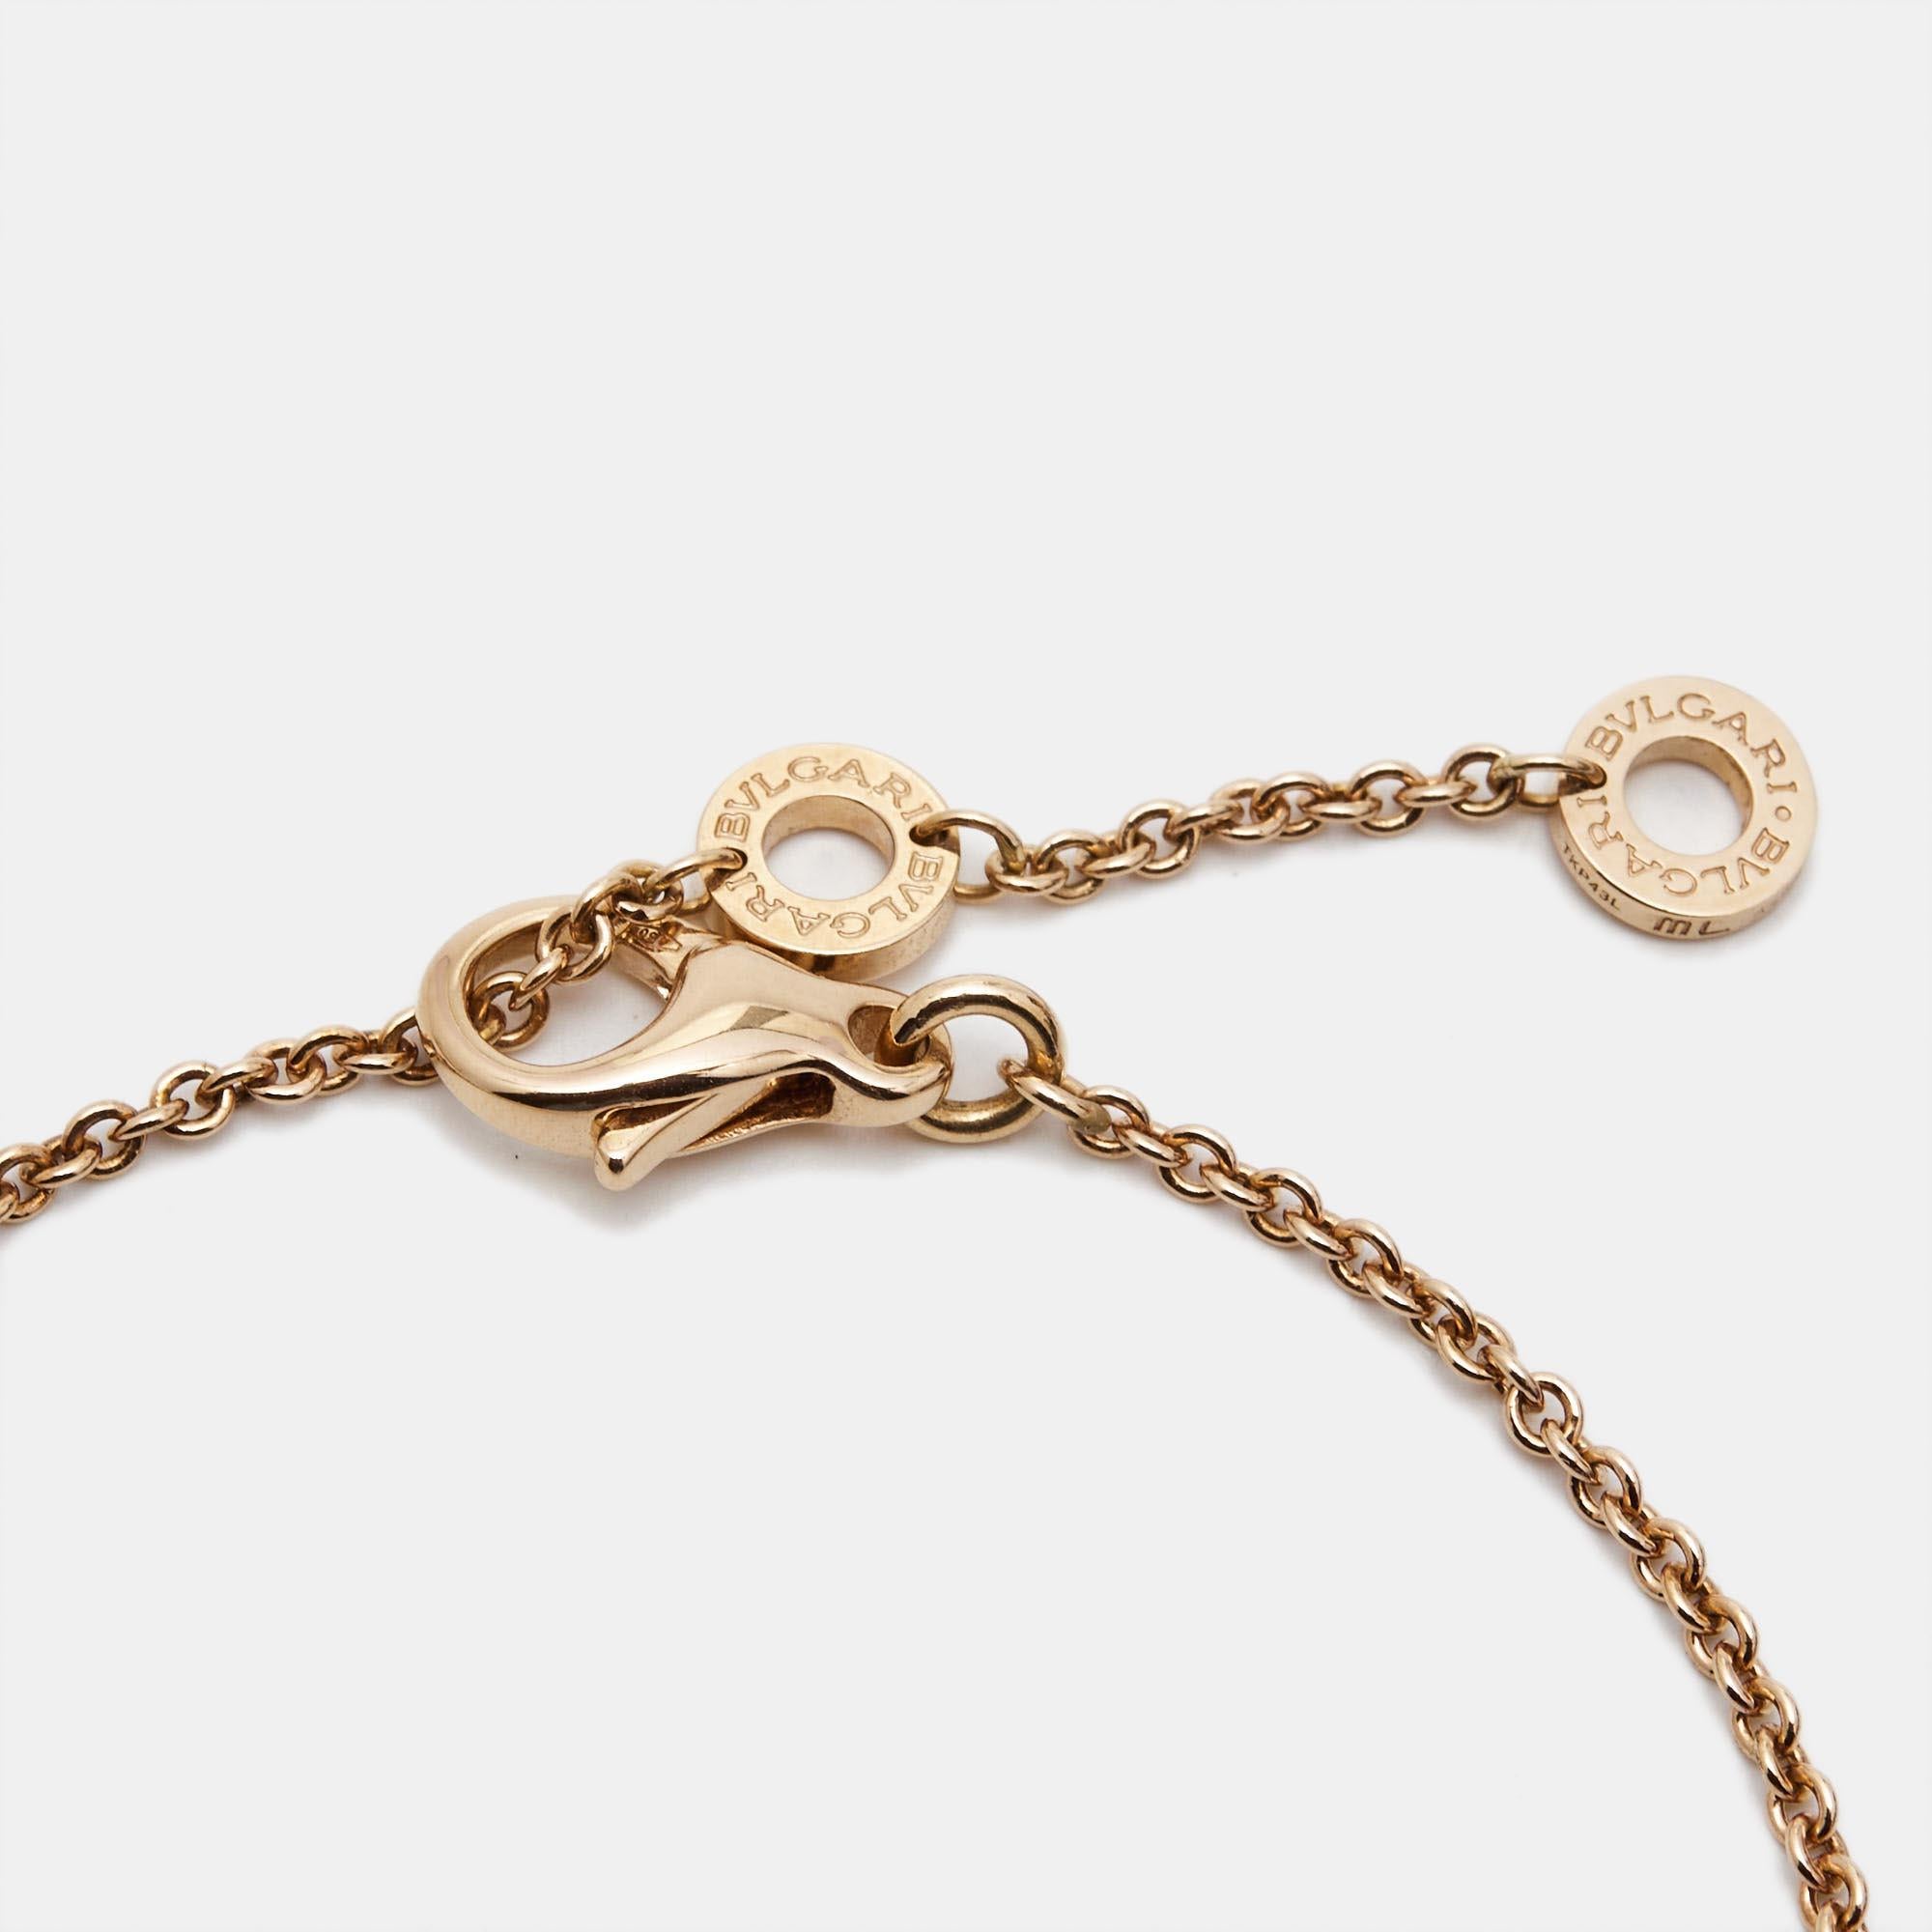 Ce bracelet Bvlgari parle de beauté par ses détails. Réalisé en or rose 18k, le bracelet Bvlgari présente un motif circulaire avec incrustation de nacre d'un côté et de cornaline de l'autre. Cette pièce sera un merveilleux compagnon de style ainsi